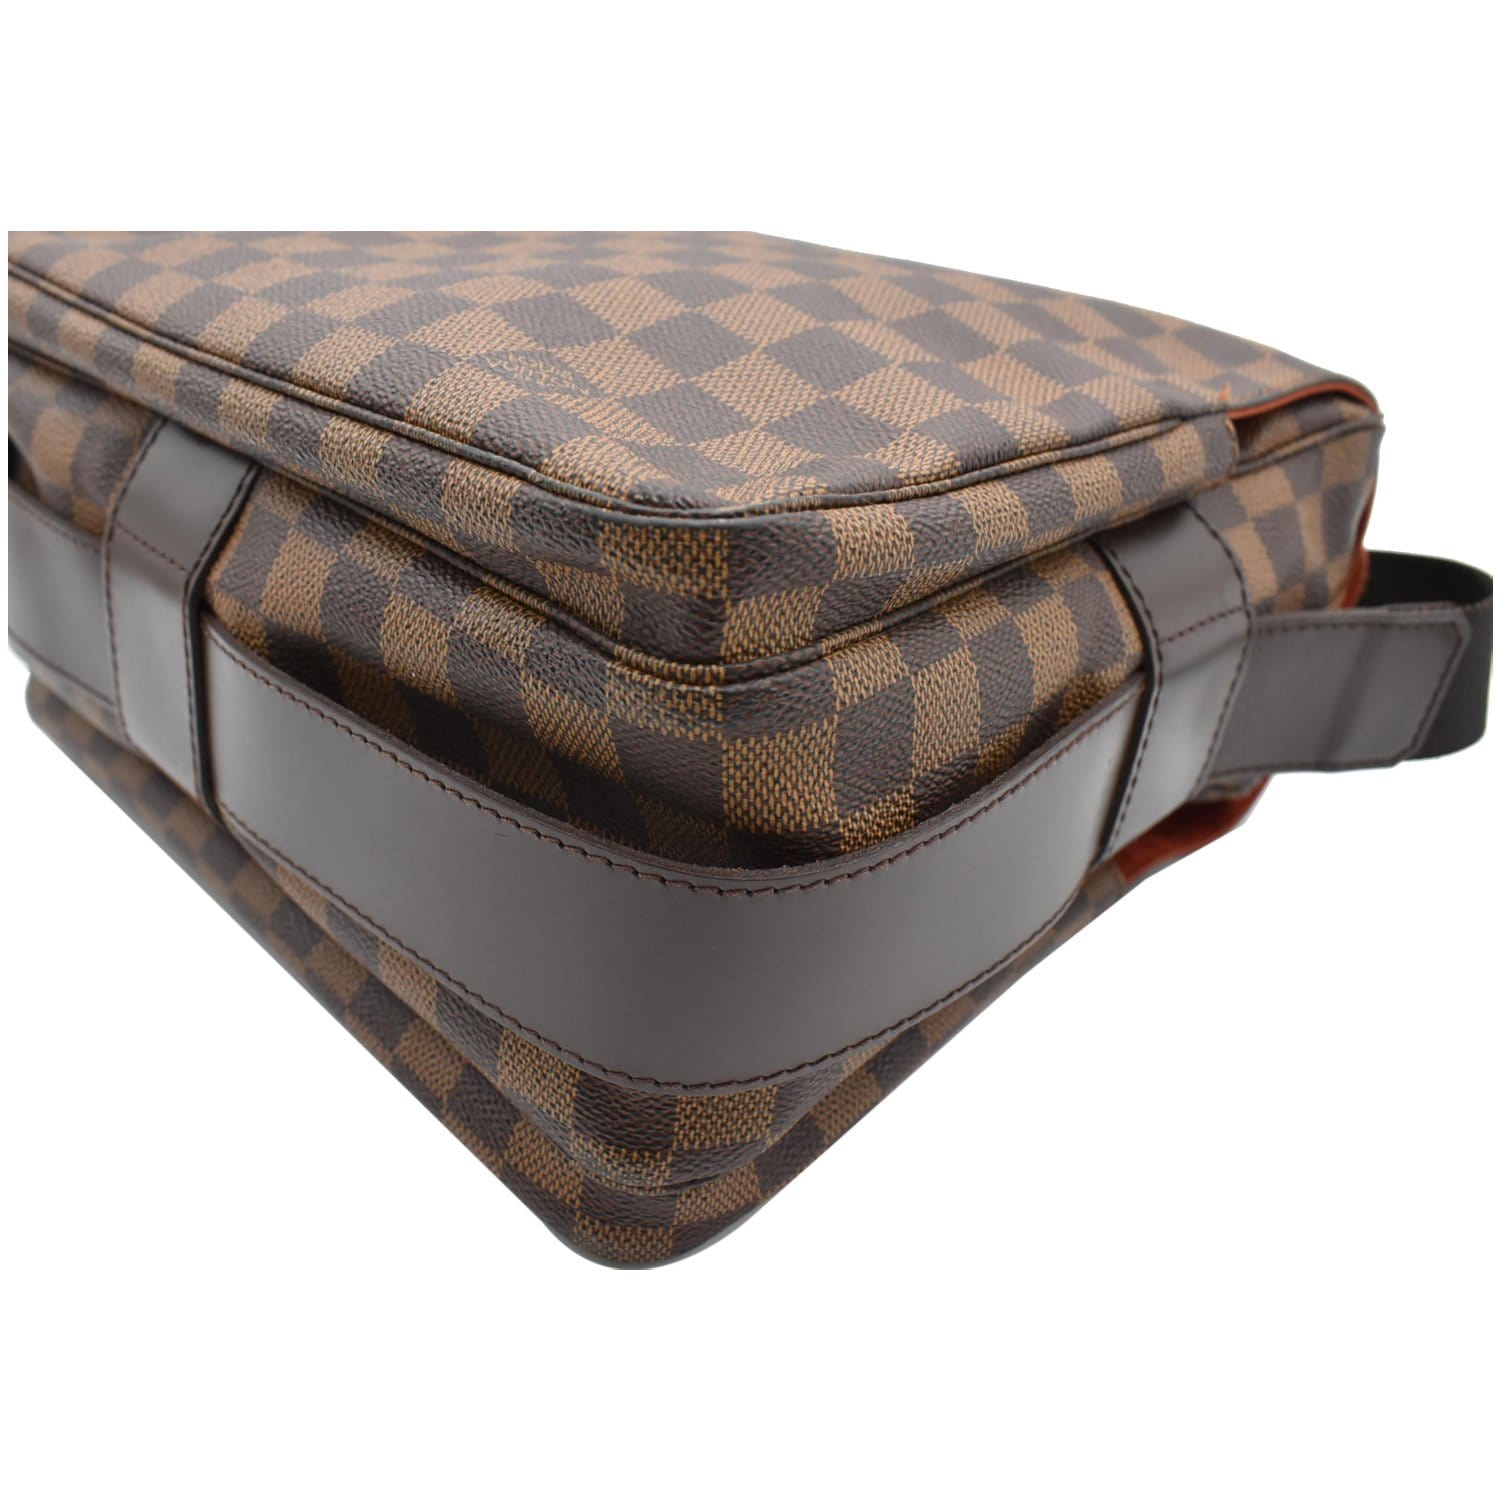 Louis Vuitton // Brown Naviglio Damier Ebene Bag – VSP Consignment